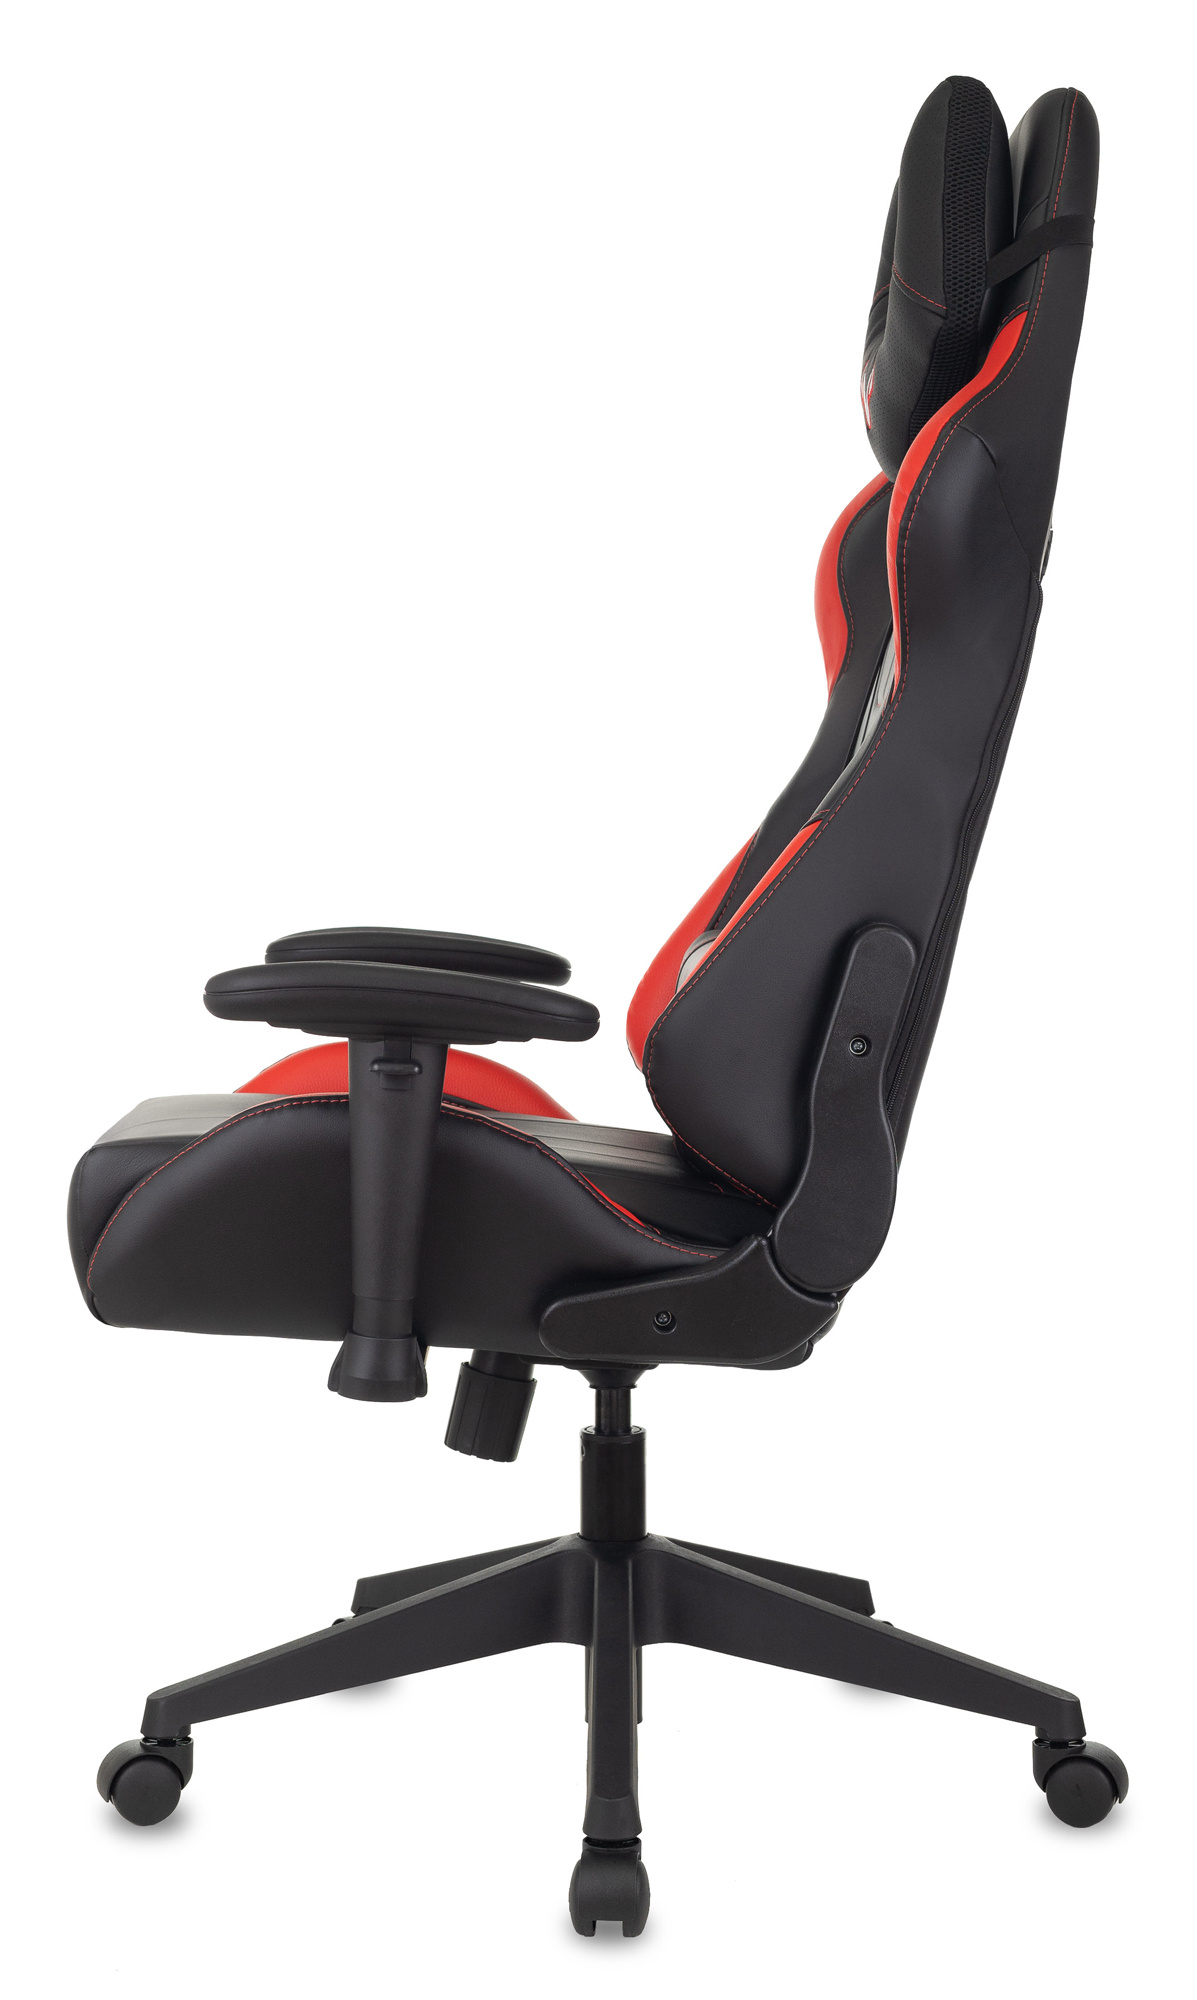 Кресло игровое Zombie VIKING 5 AERO, обивка: эко.кожа, цвет: черный/красный (VIKING 5 AERO RED) от магазина Buro.store